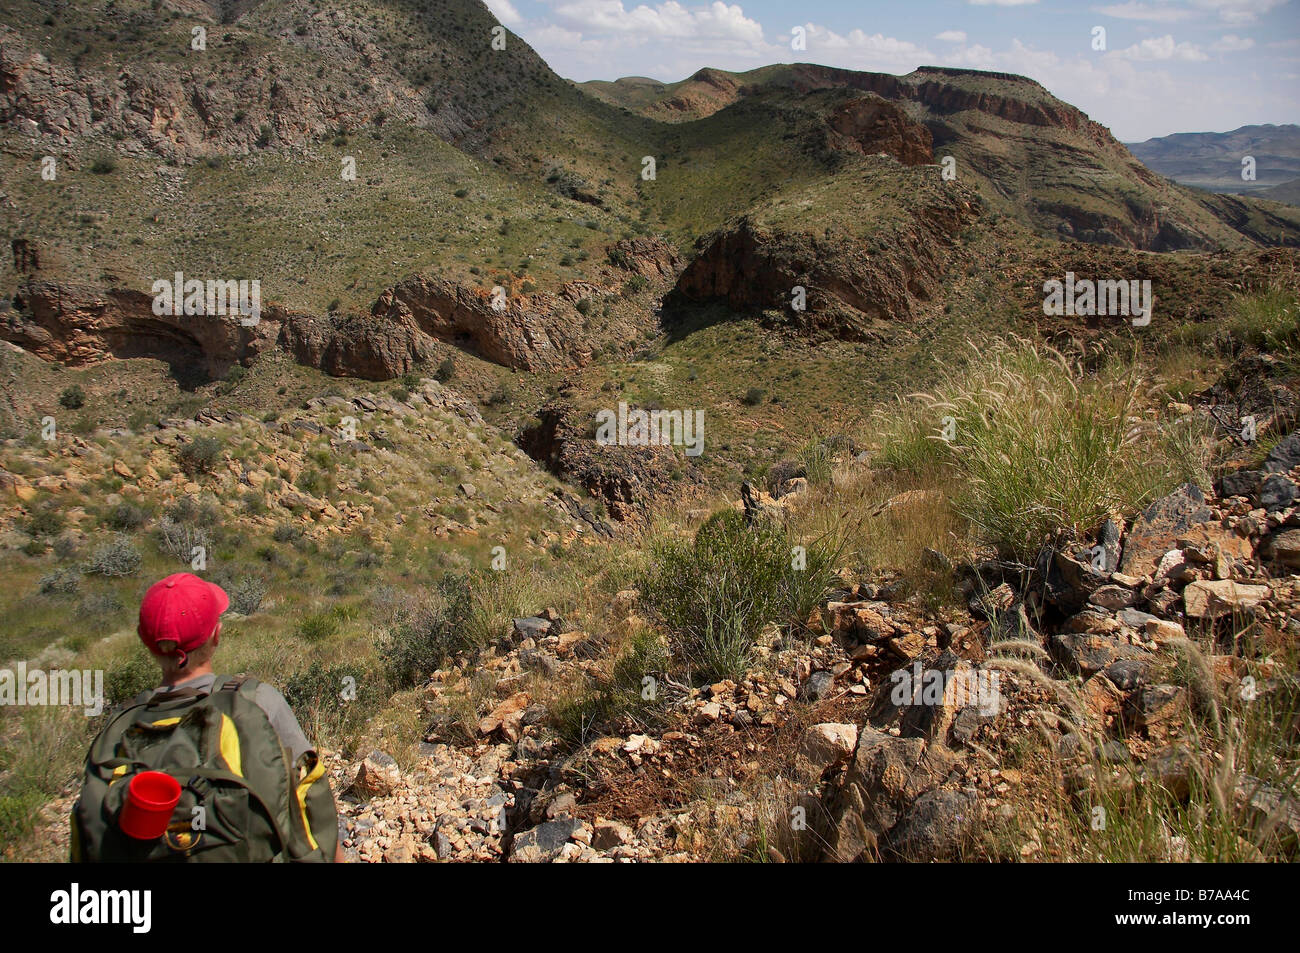 Un excursionista adolescente llevaba una gorra roja sobre una cresta rocosa teniendo en la vista Foto de stock